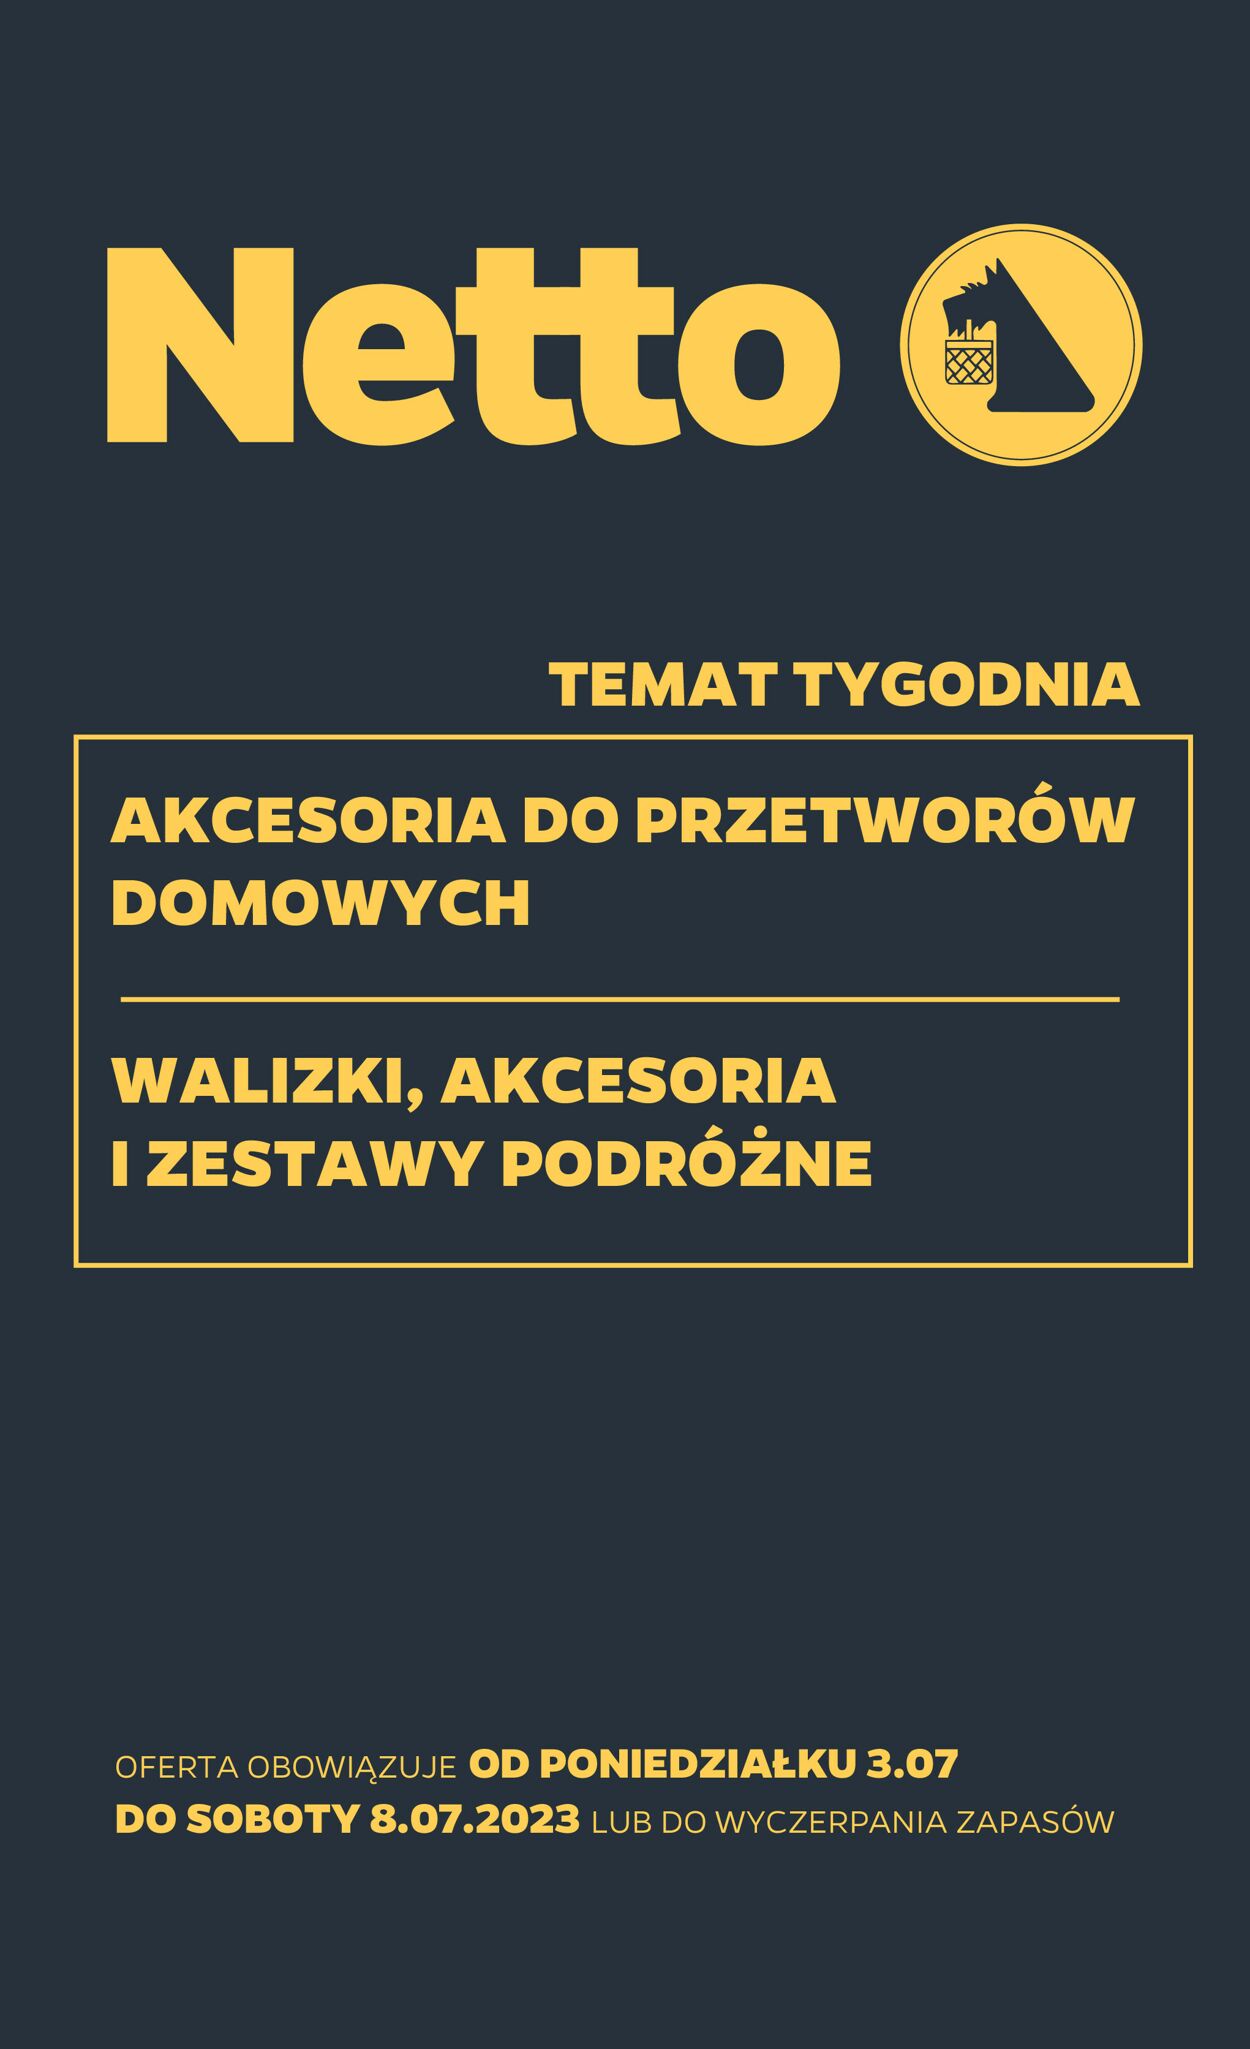 TESCO Gazetka od 03.07.2023